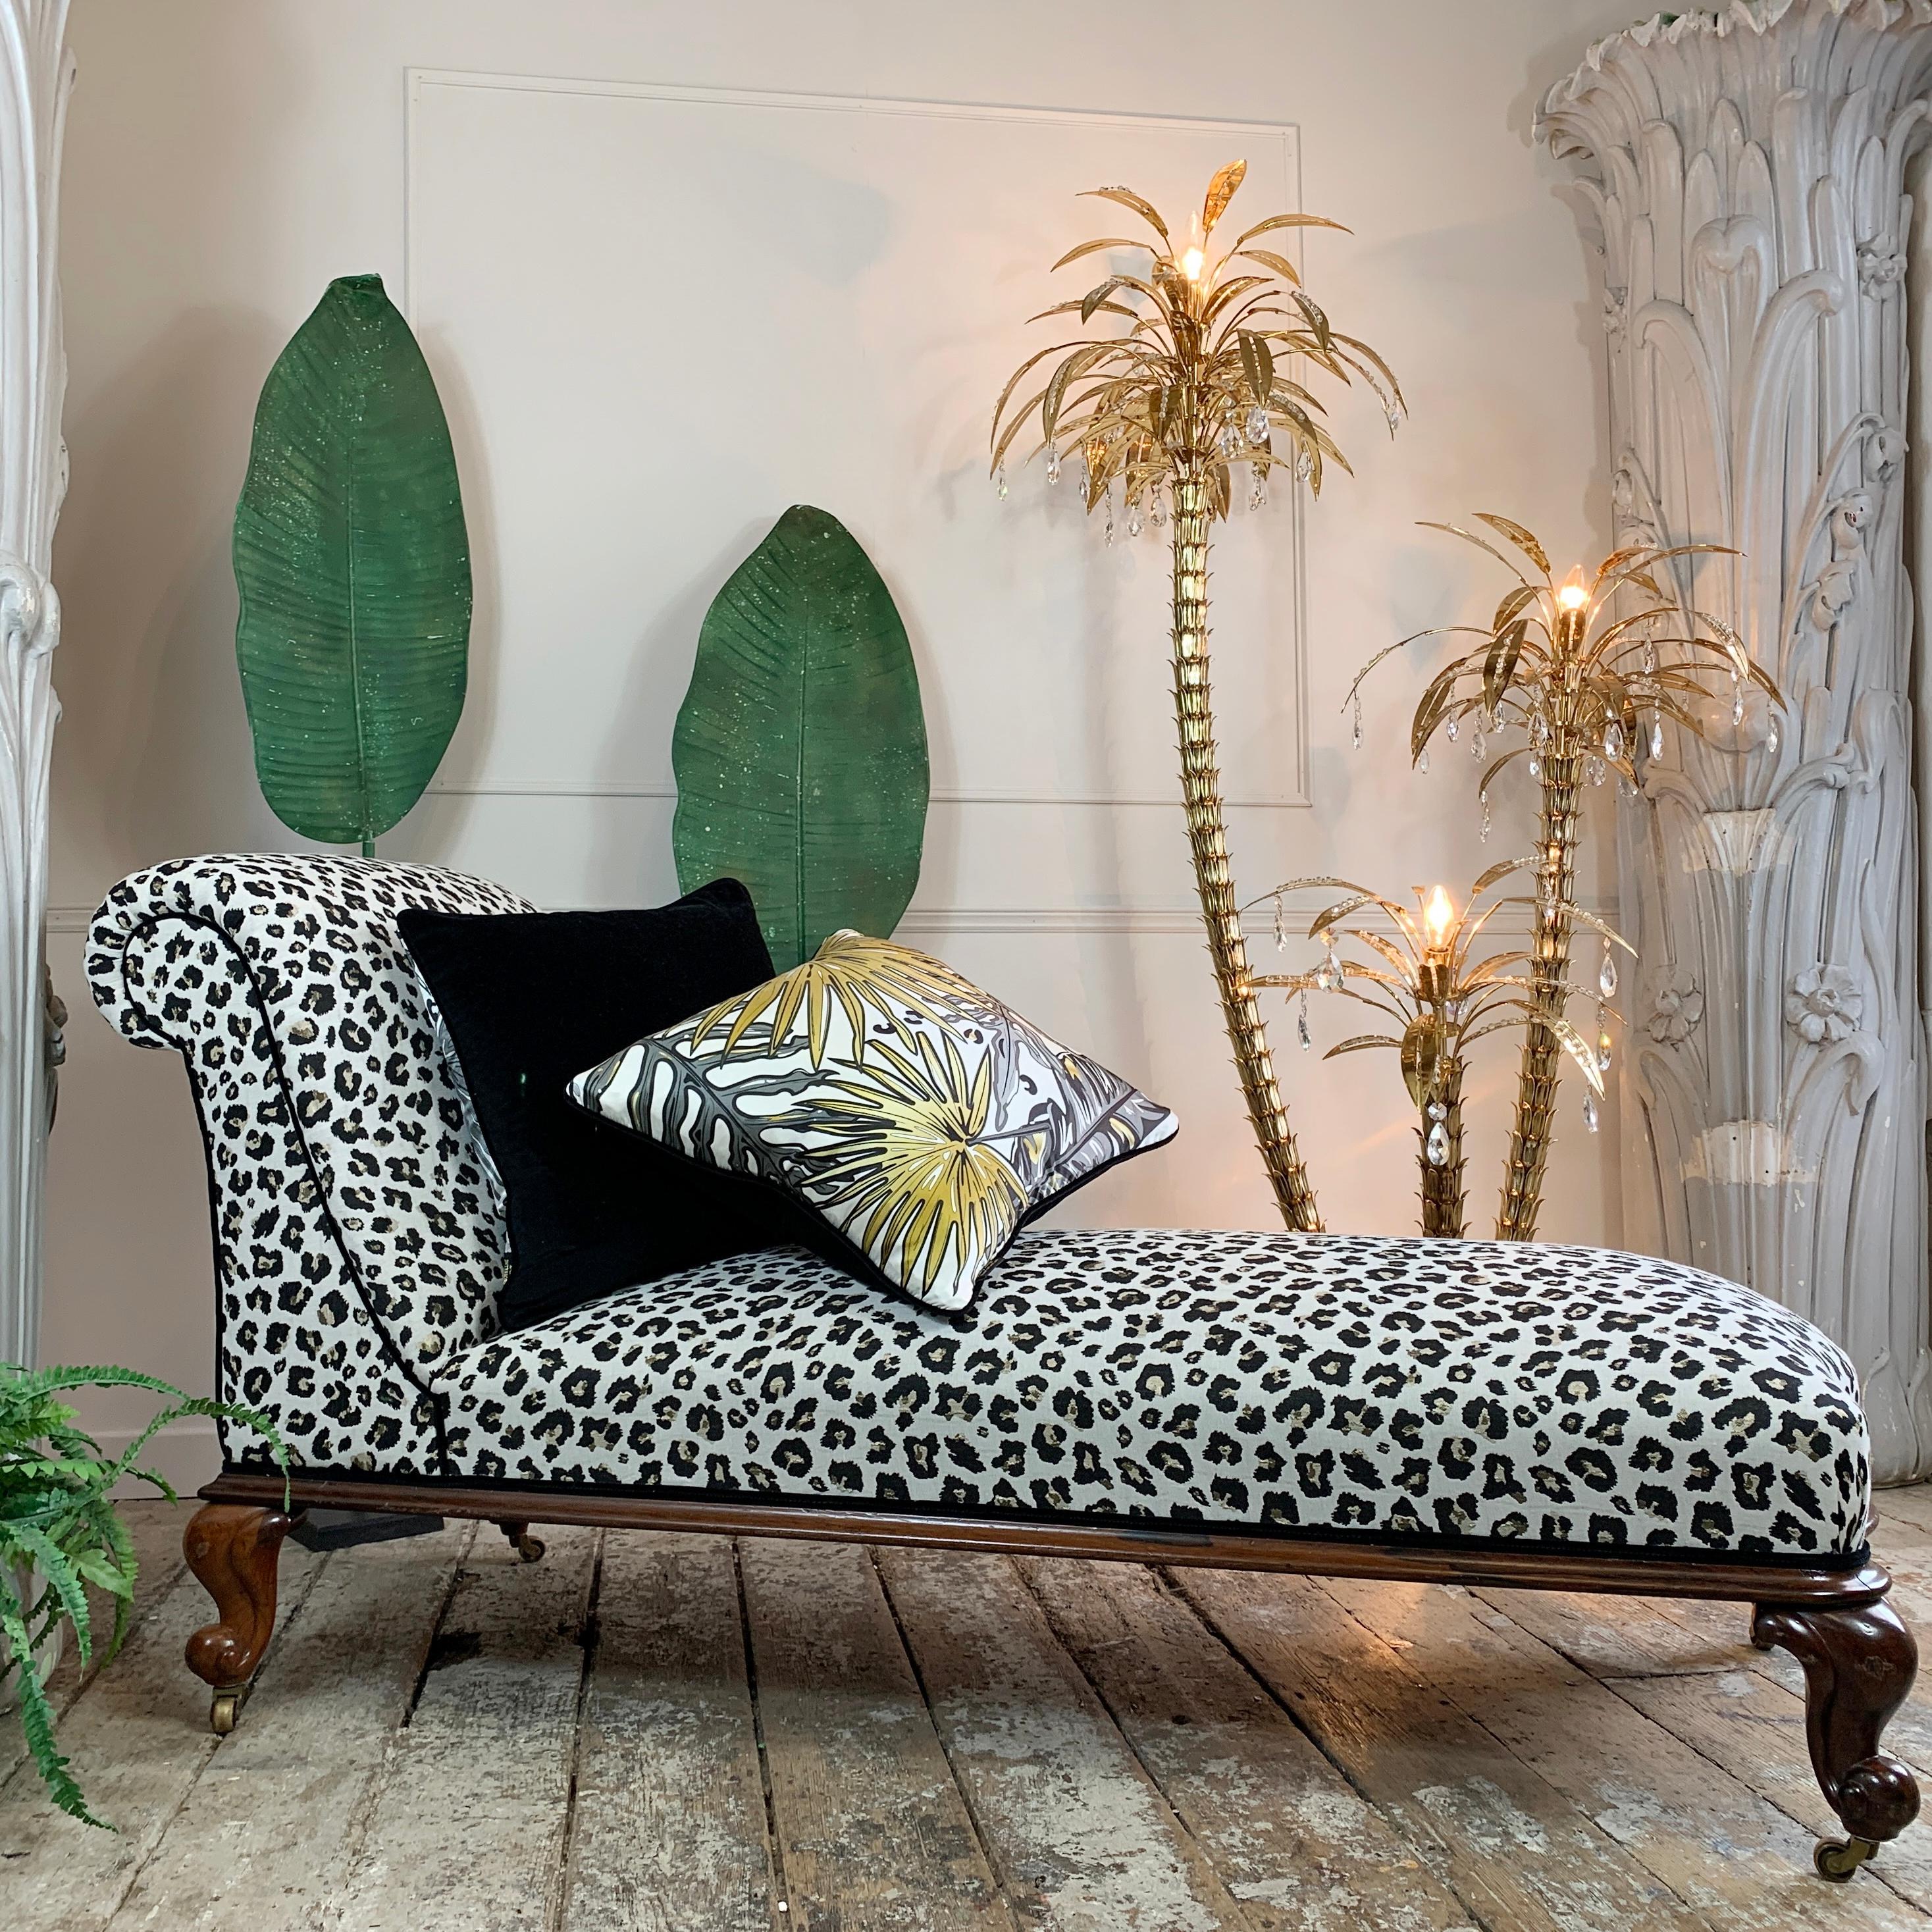 Une élégante et exceptionnelle chaise longue victorienne, début du 19e siècle.

Nouvellement revêtu d'un superbe tissu jacquard léopard tissé à la main, à motif léopard noir et or sur une base blanche, garni tout autour d'un riche passepoil de